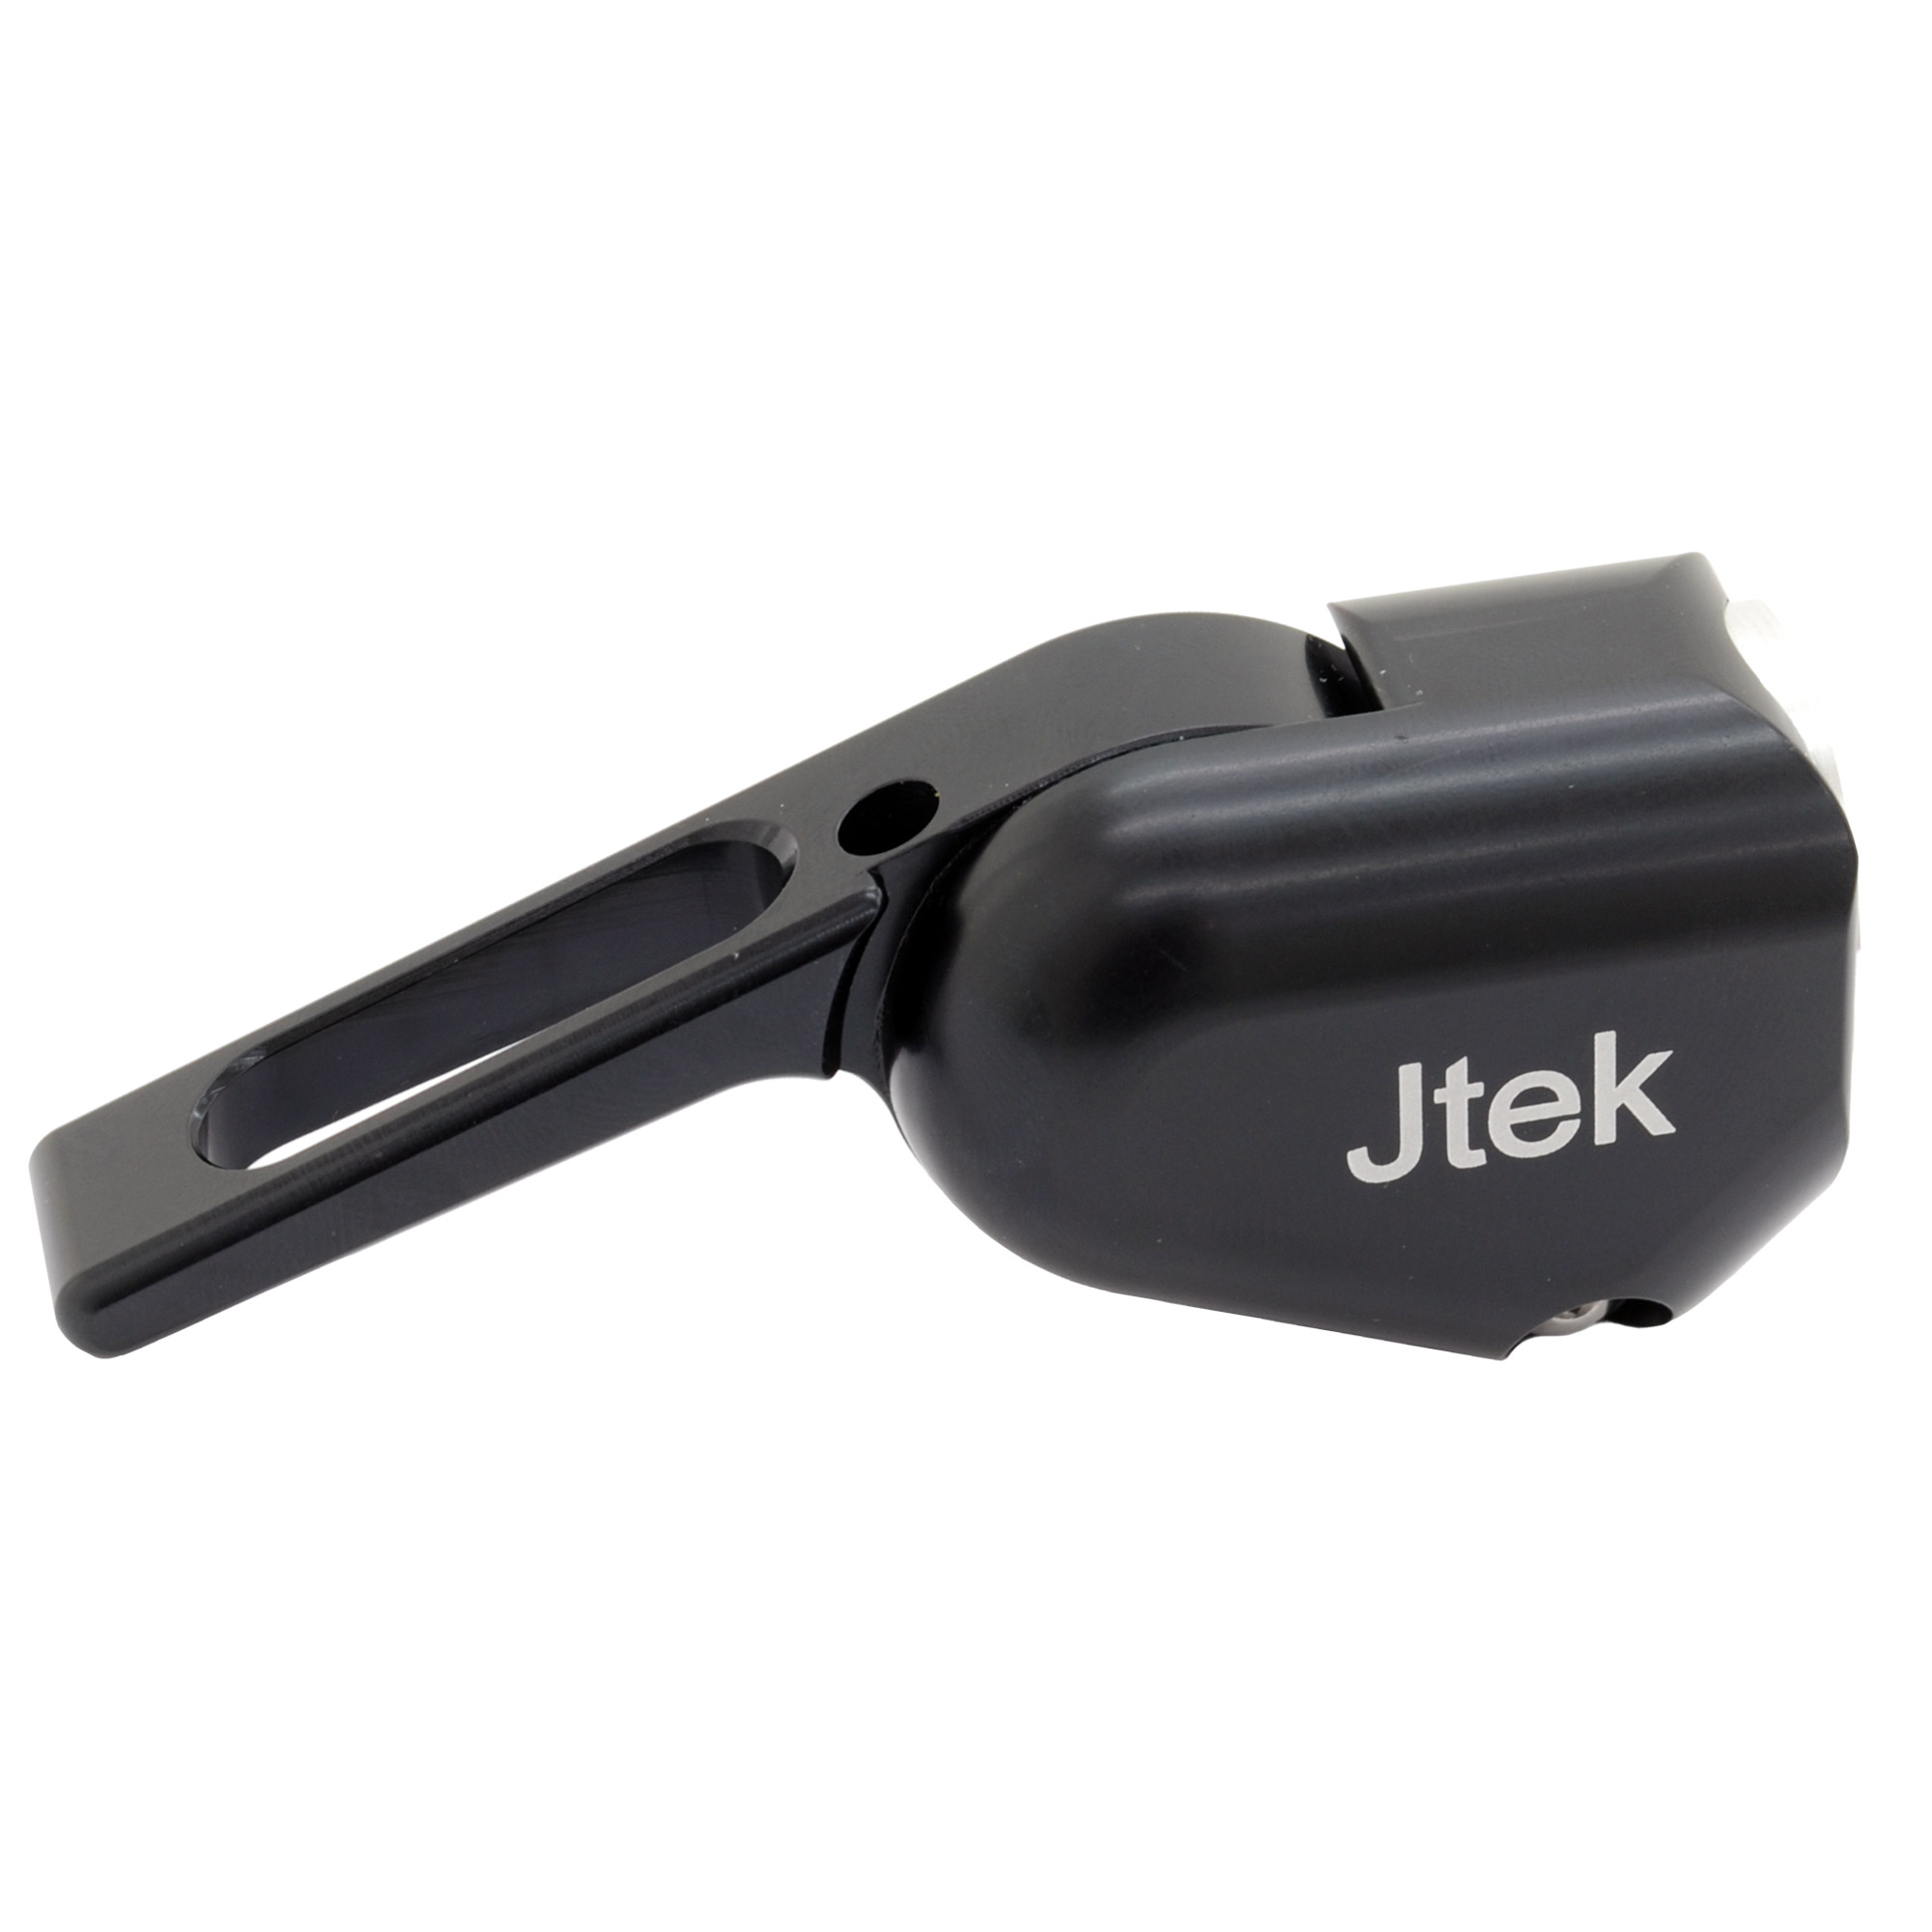 Jtek 8 Speed Bar End Shifter picture